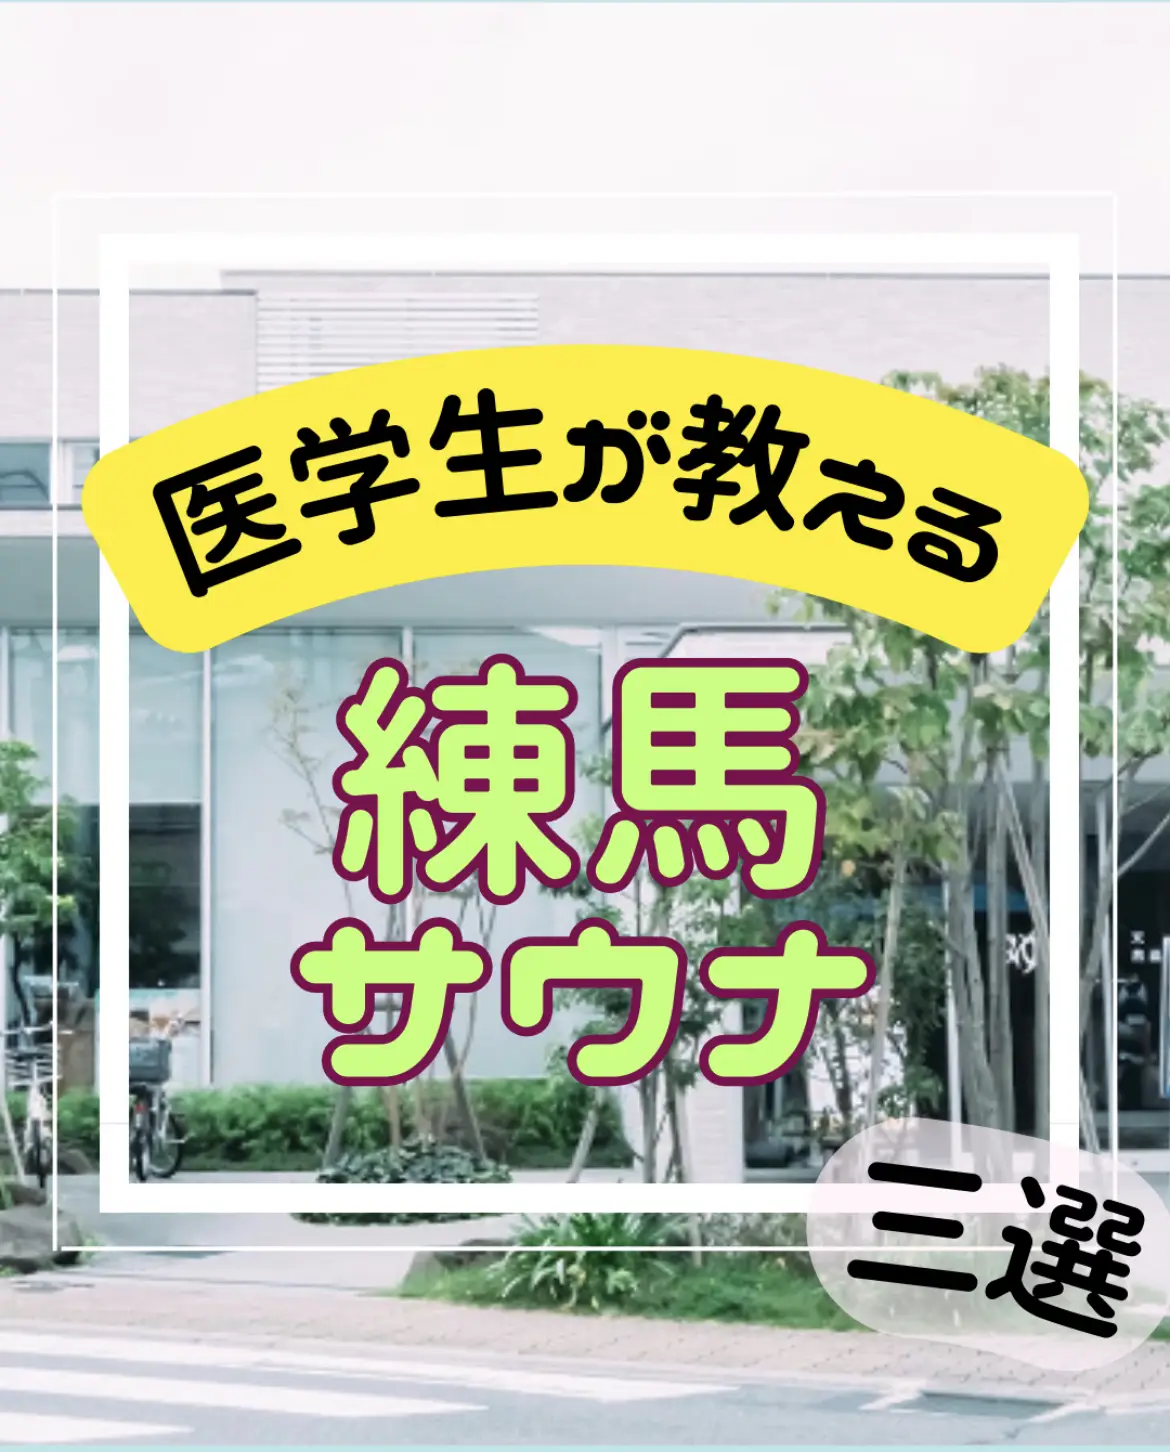 墨田健康スポーツセンター - Lemon8検索